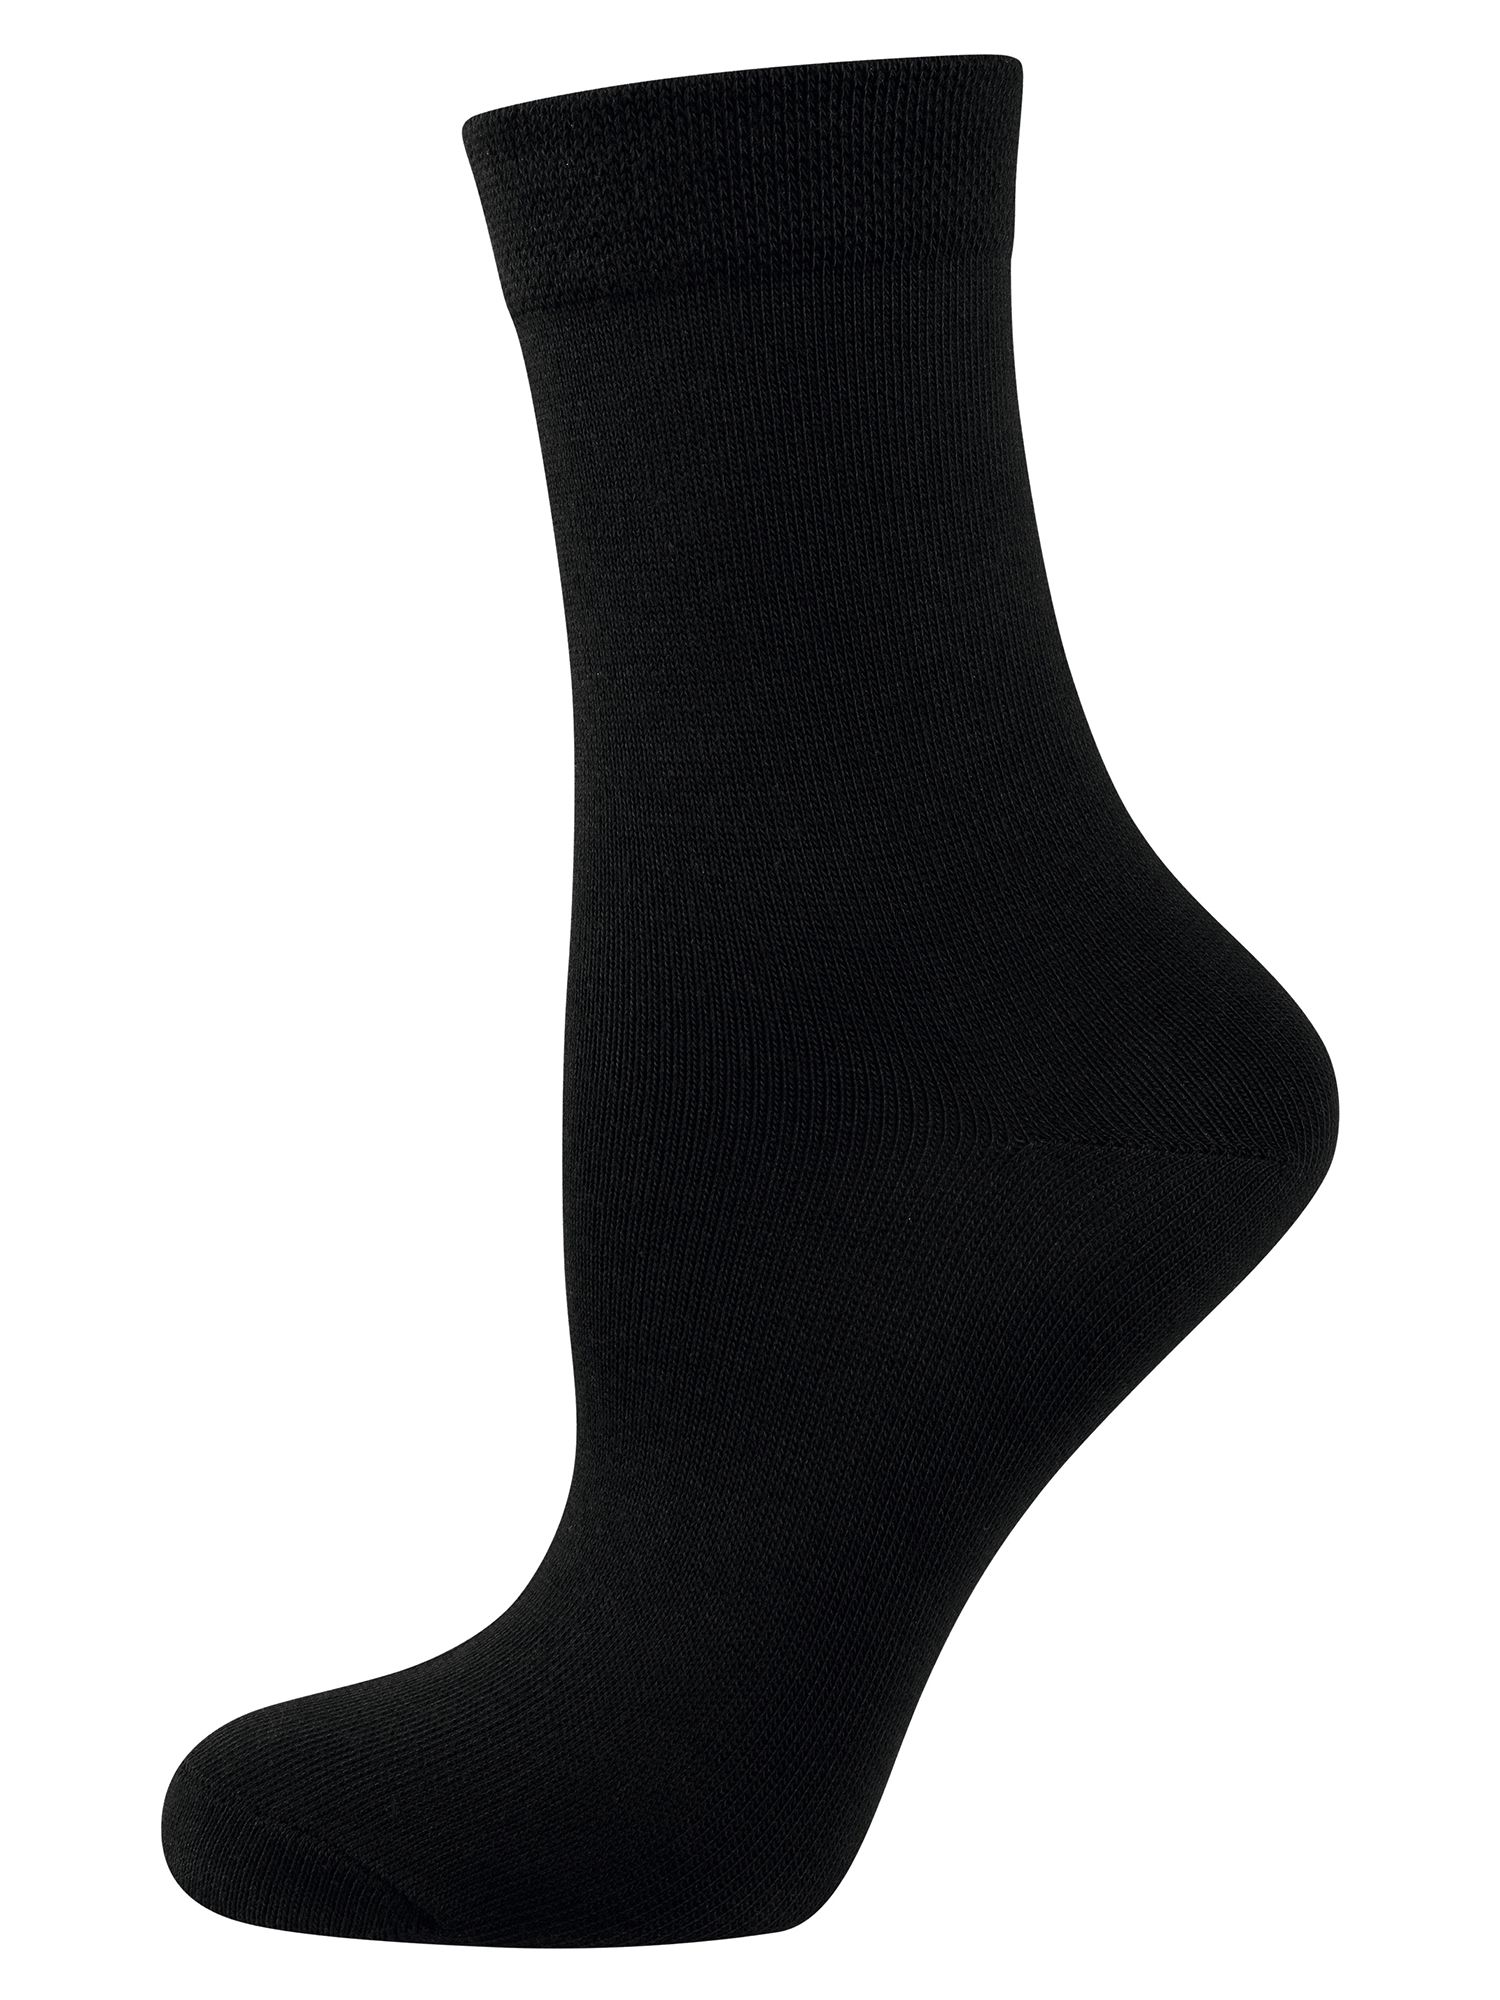 NUR DIE Socken Ohne Gummi 3er Pack - schwarz - 35-38